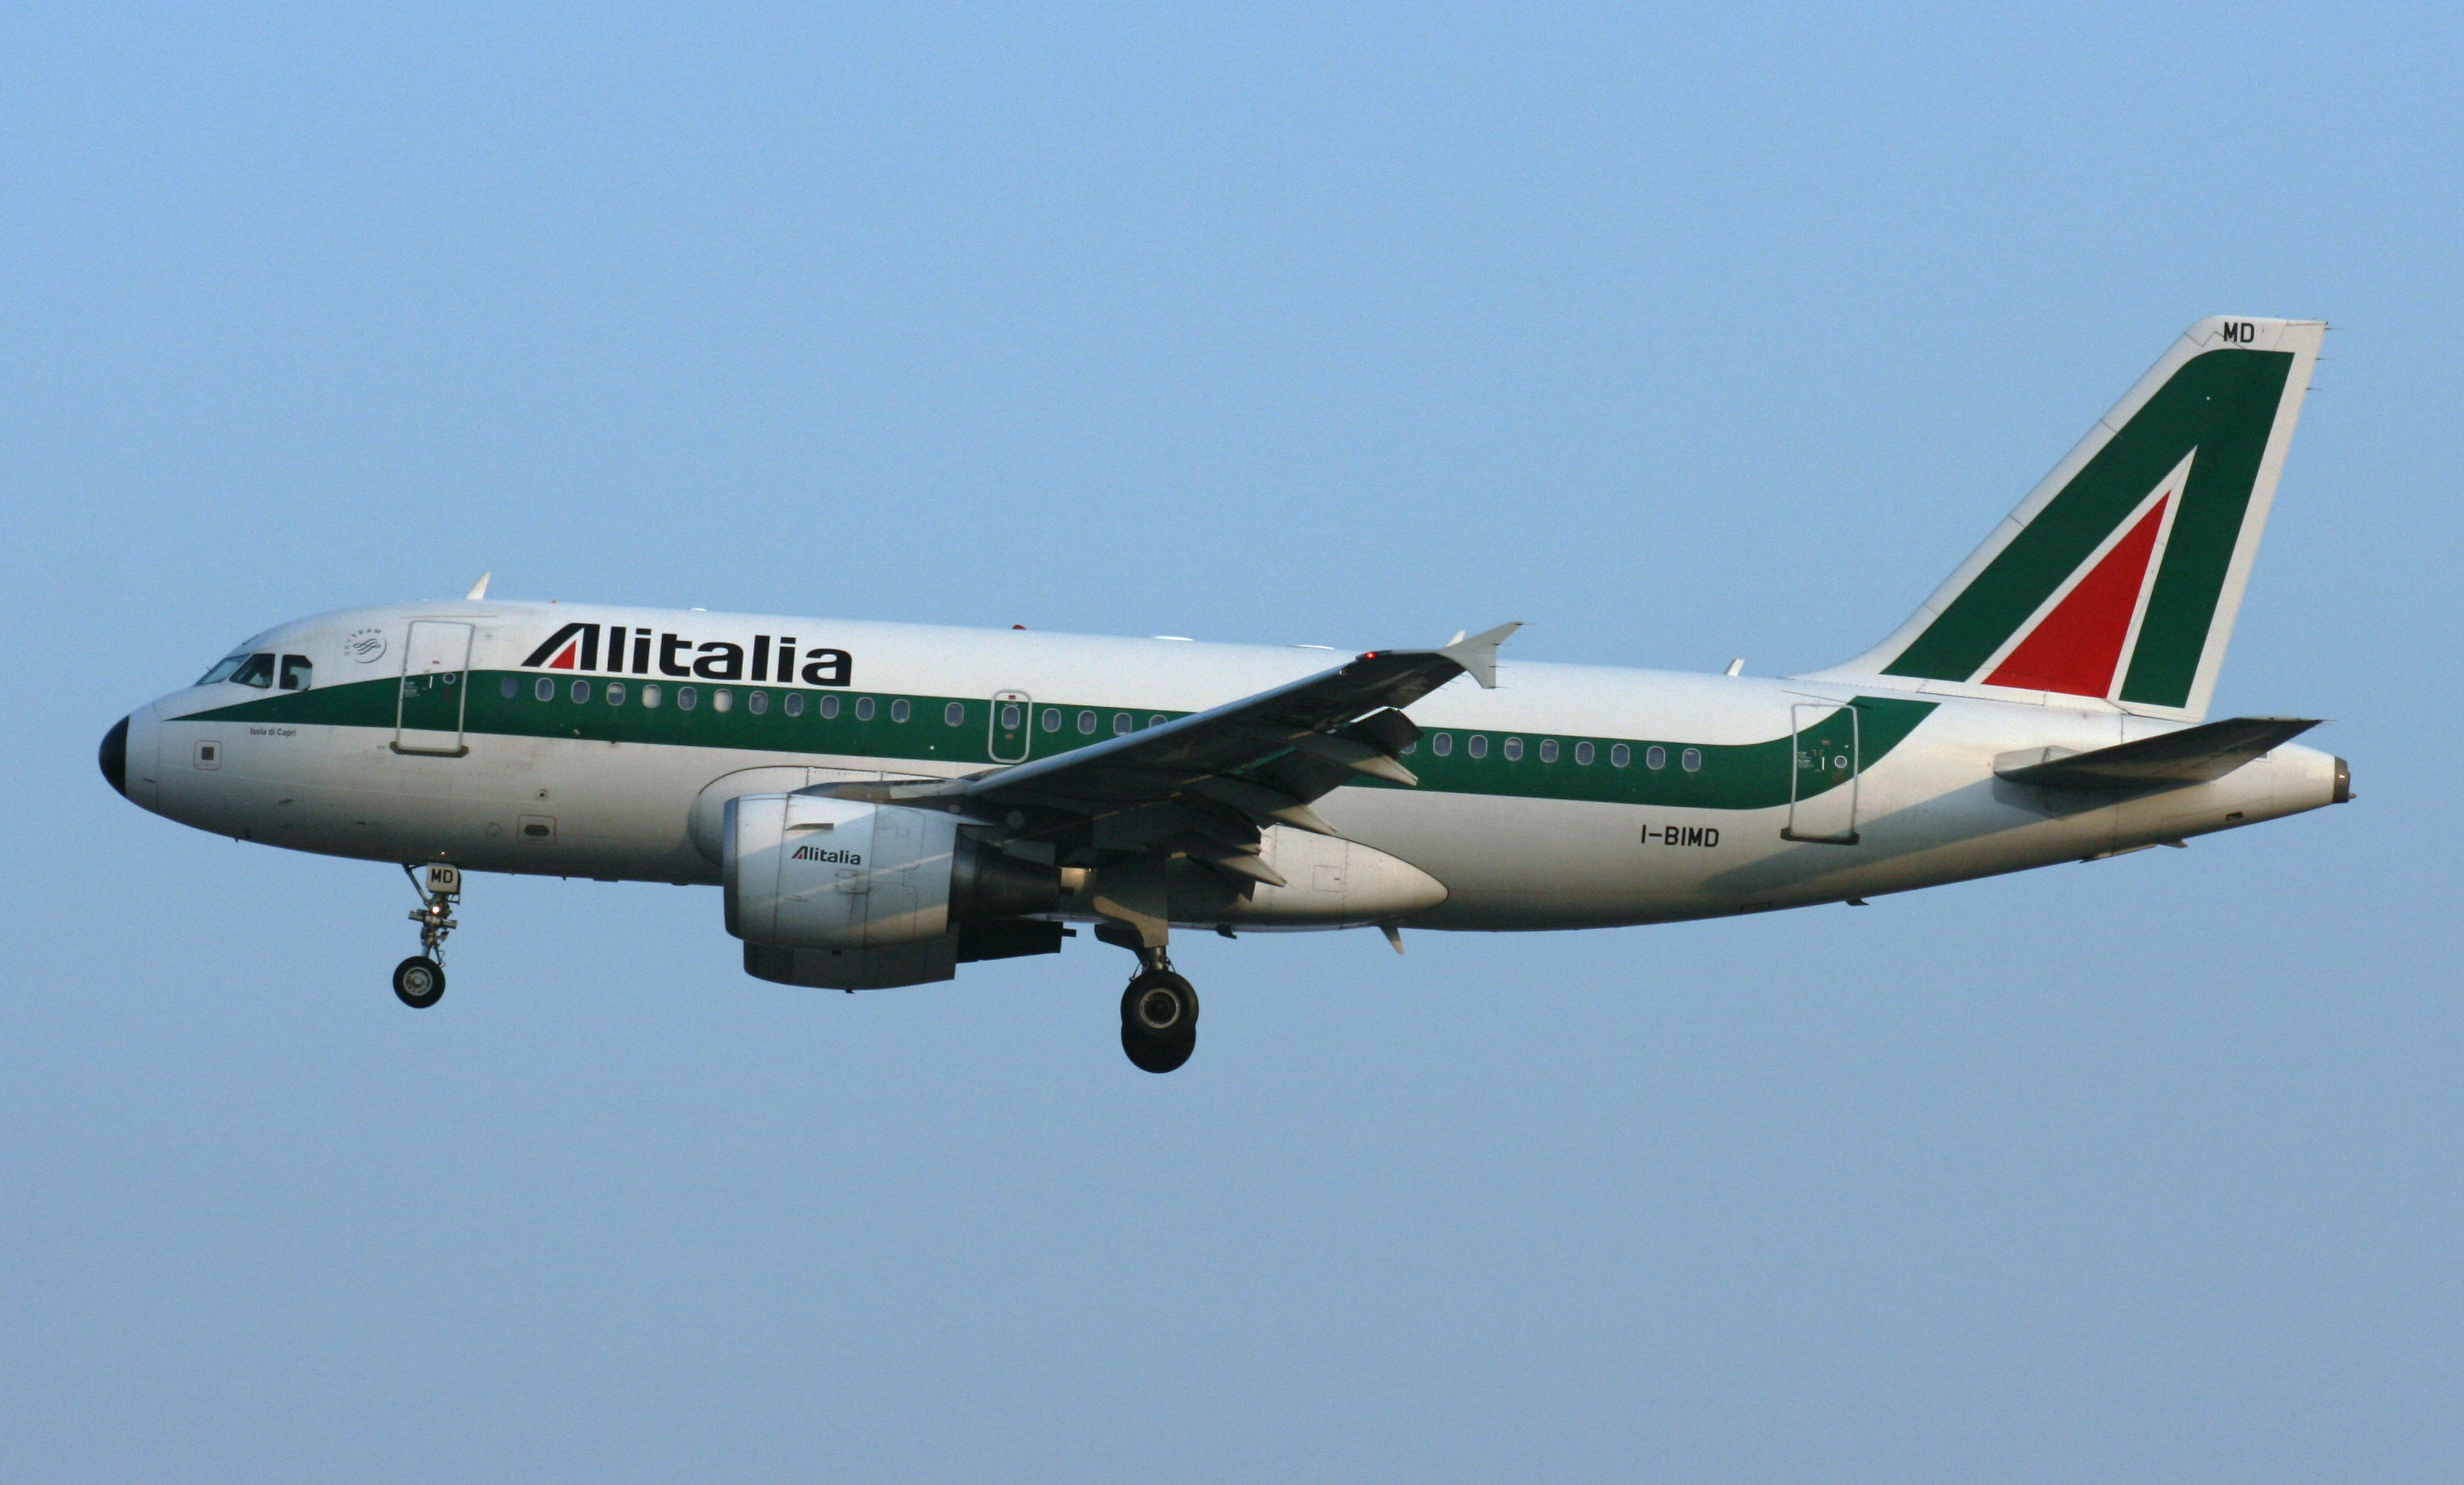 I-BIMD A319-100 Alitalia GVA 14.03.2010